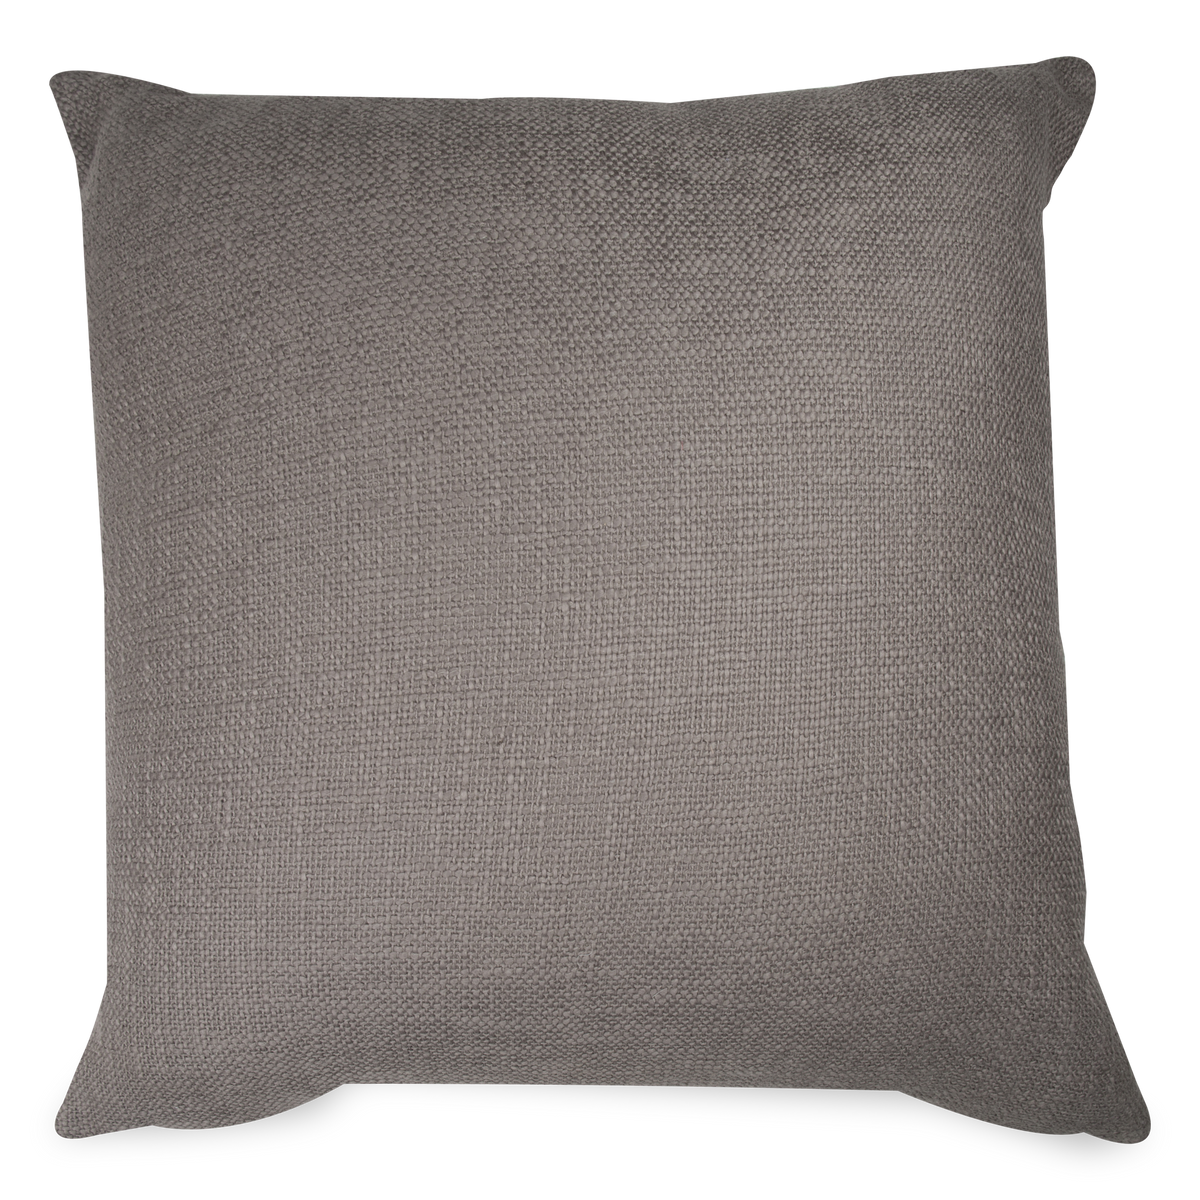 Cotton Weave Pillow